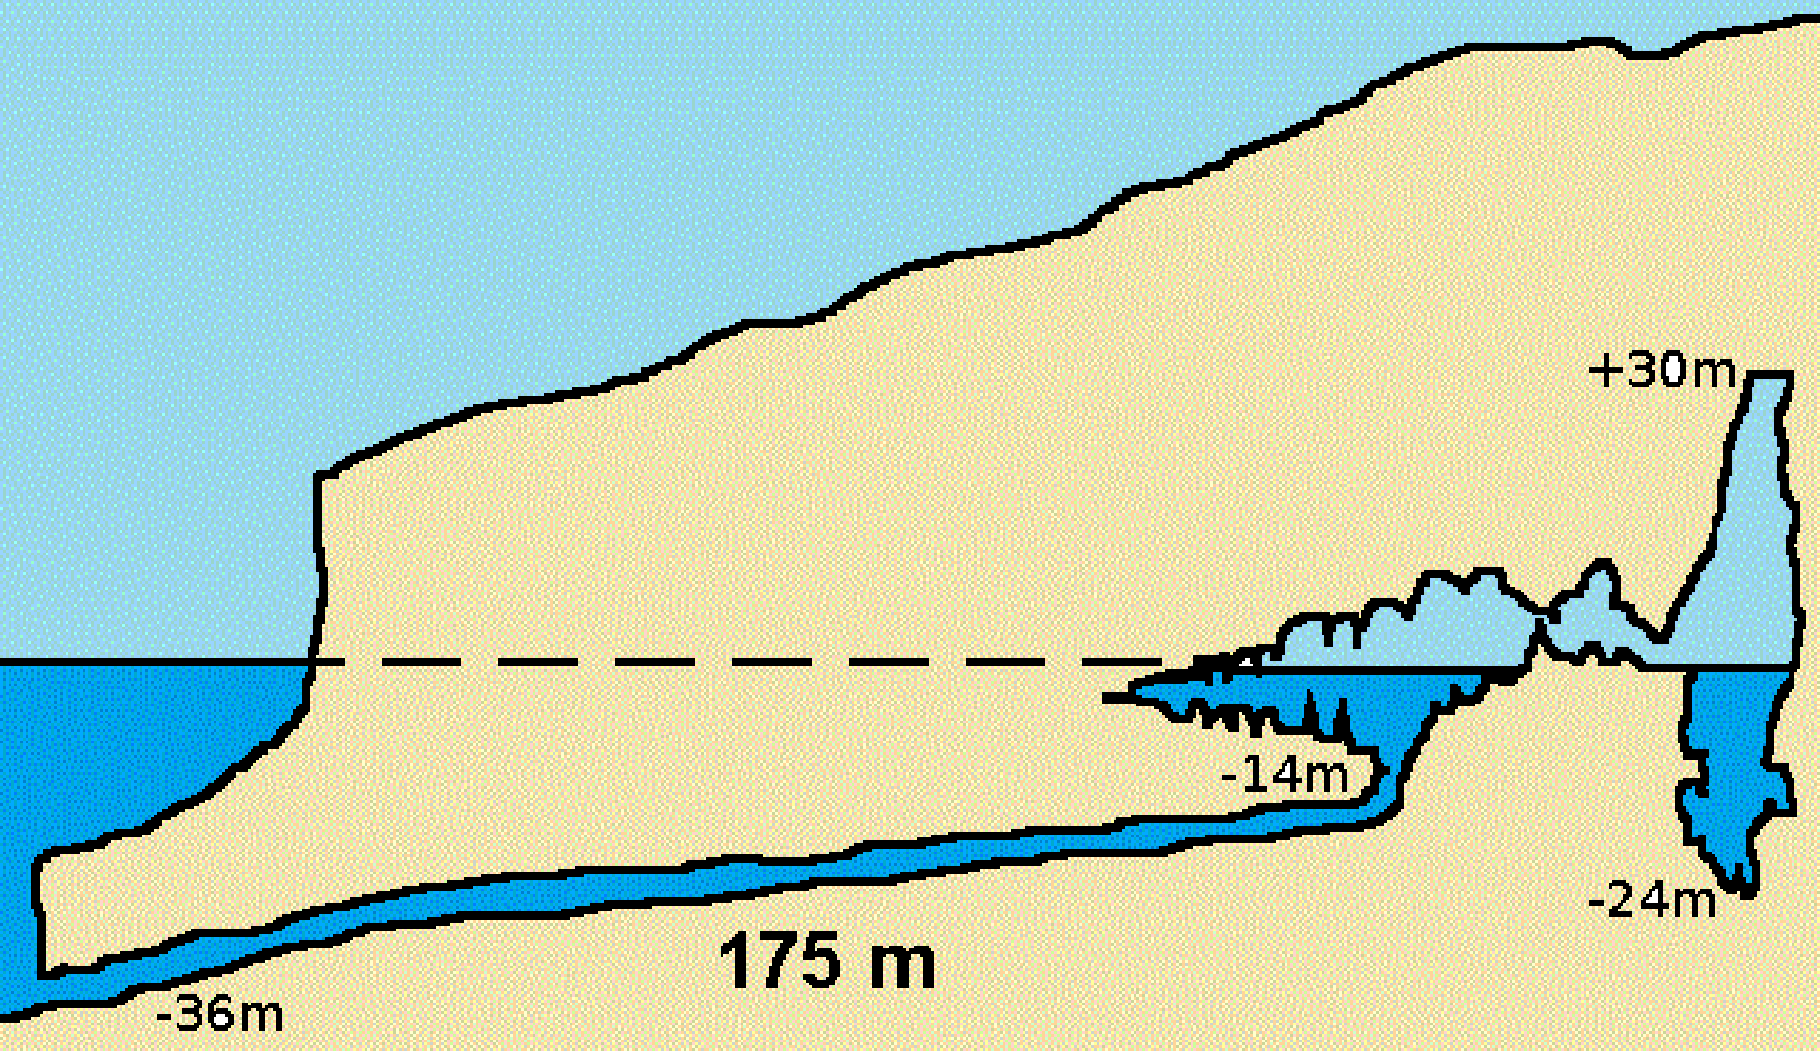 Profil de la grotte Cosquer. © Unclebarned, wikipedia commons, CC 3.0